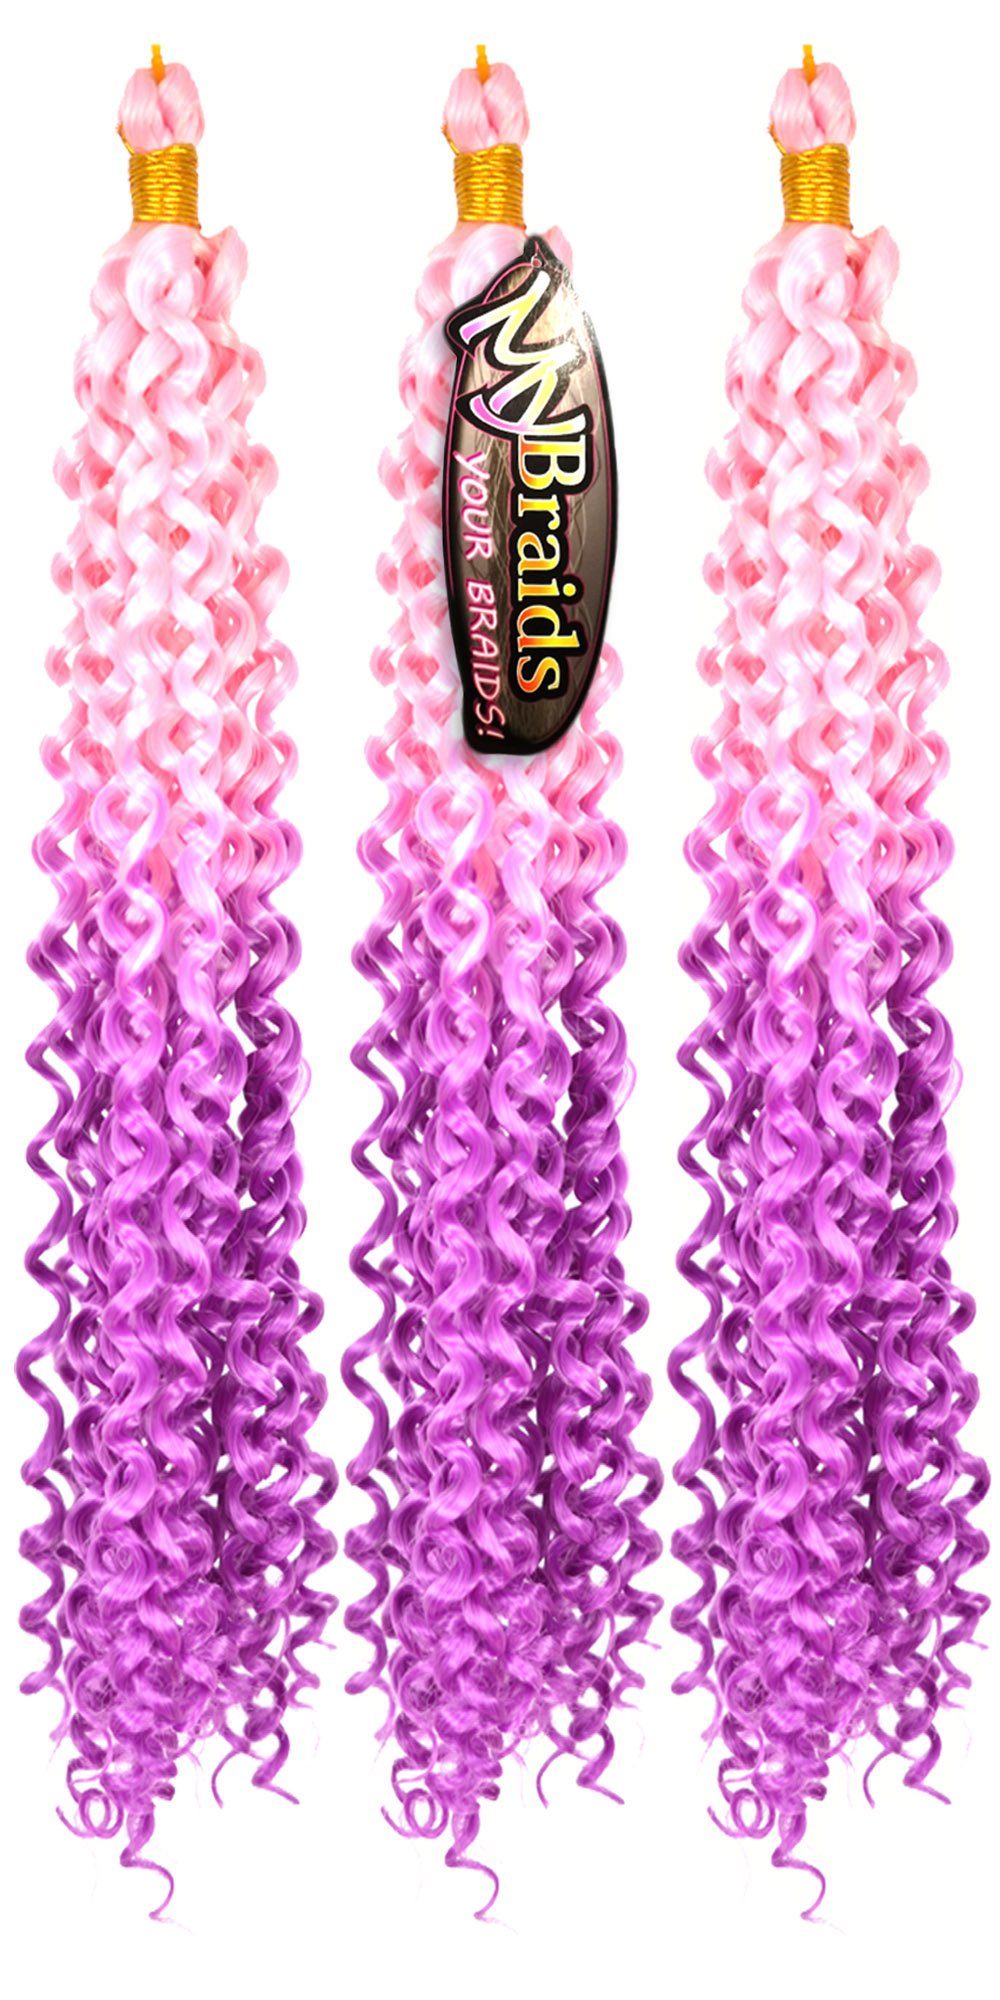 Purpur Zöpfe Hellrosa-Helles YOUR Braids Pack 22-WS Wellig Flechthaar Wave Kunsthaar-Extension BRAIDS! MyBraids Deep Ombre Crochet 3er